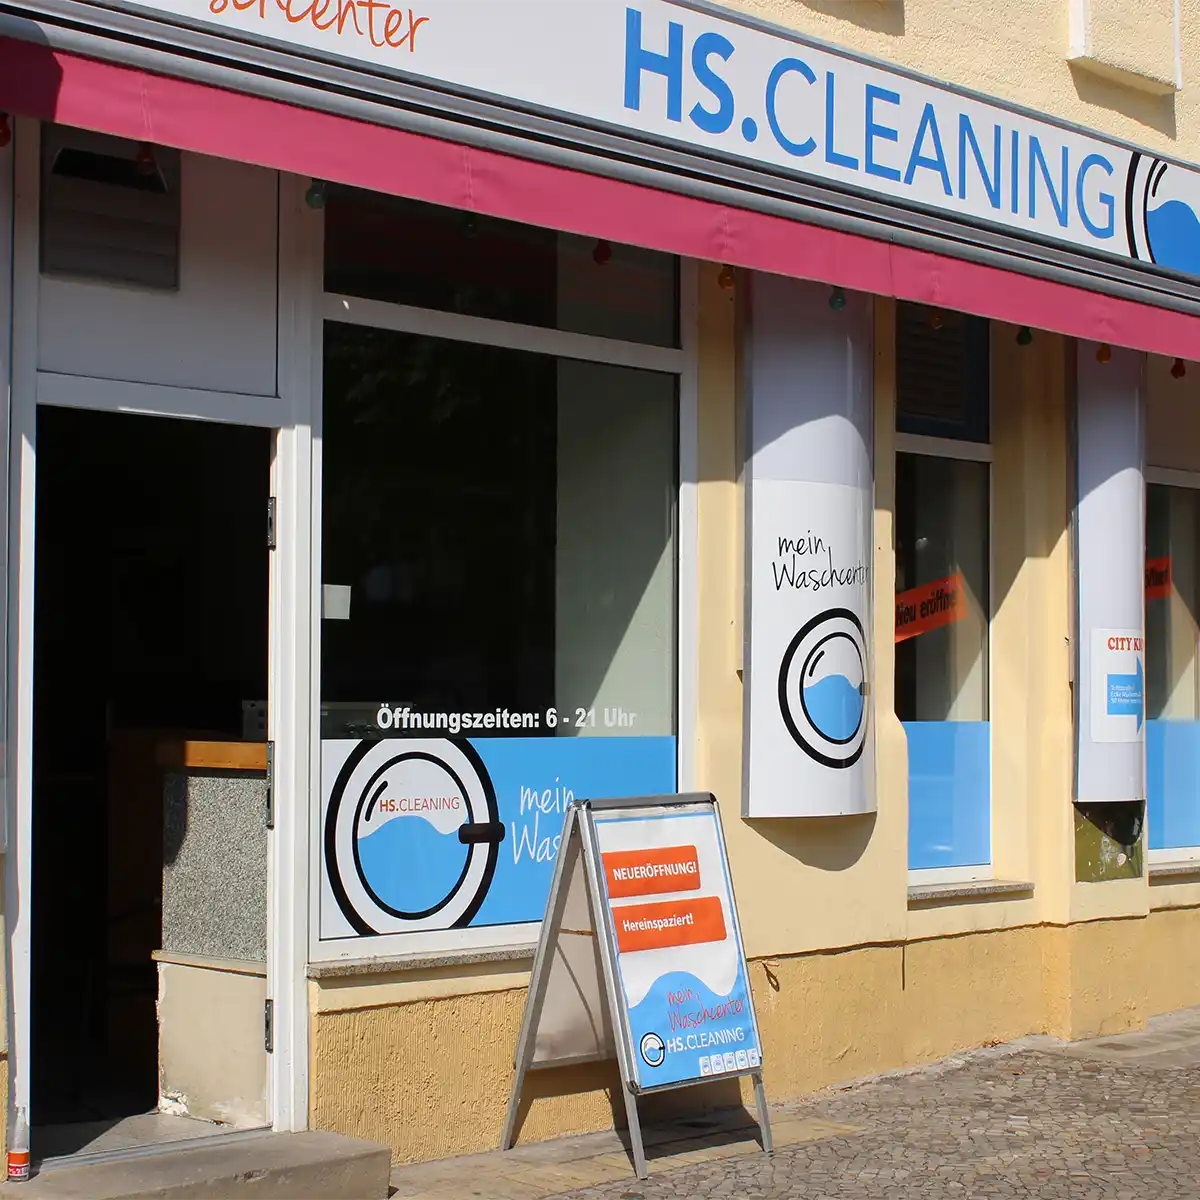 Der eingang des HS.Cleaning Waschcenters. Vier Ladenfenster mit der Werbung von HS.Cleaning, Links davon ist der Eingang